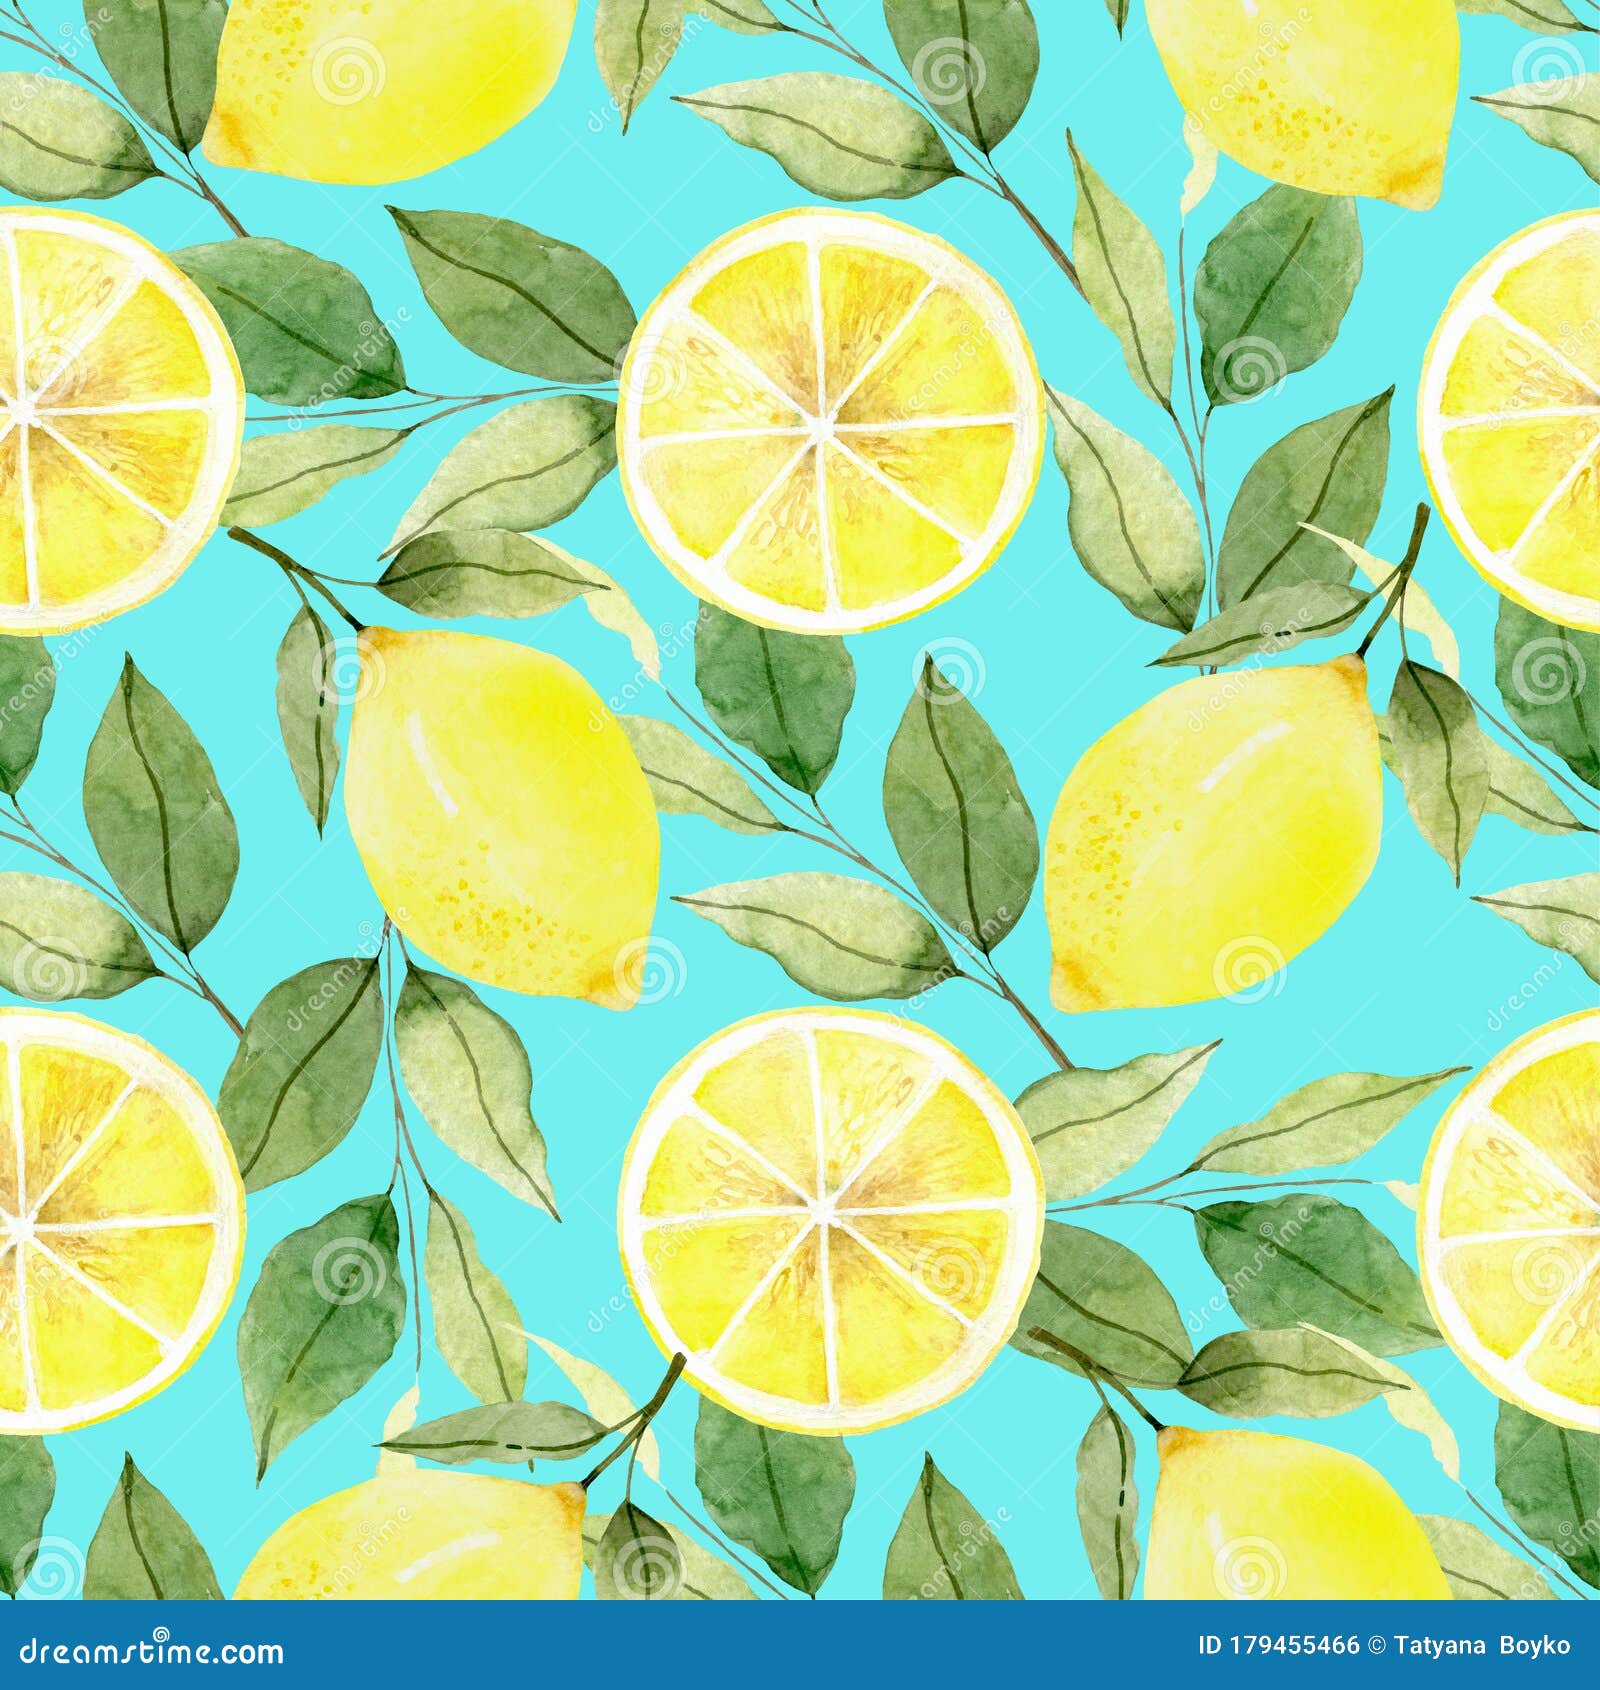 柠檬 水色图案 背景 水果 墙纸 柠檬花环夏日你好库存例证 插画包括有本质 新鲜 柠檬 图象